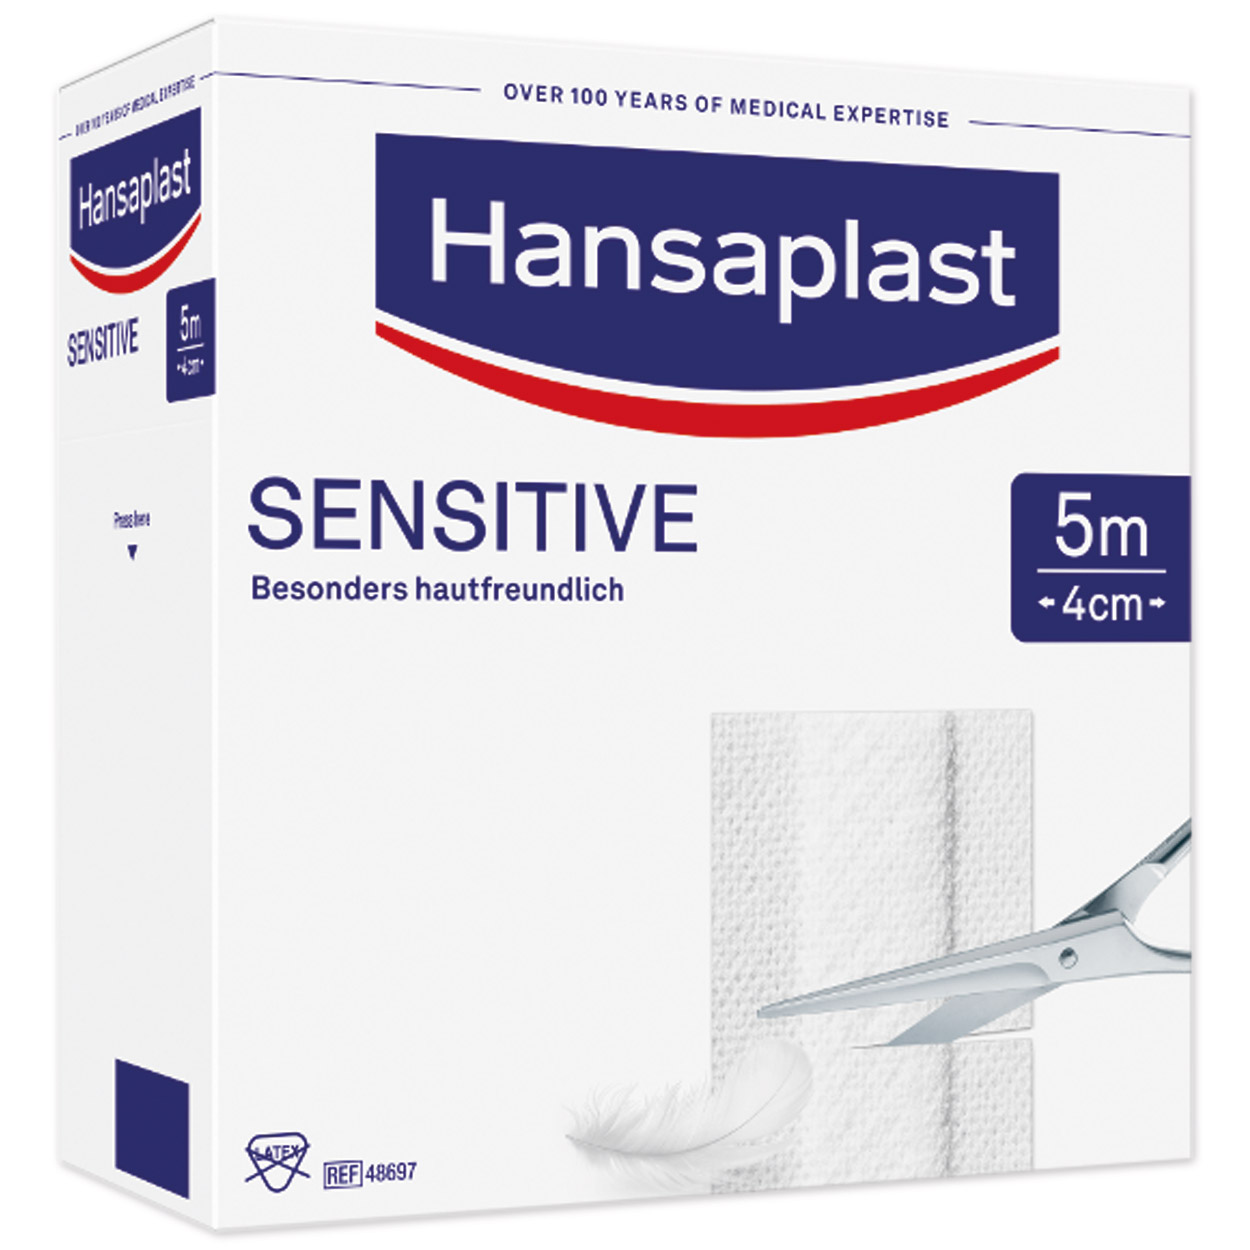 Hansaplast Sensitive Wundpflaster 5 m x 4 cm in weiß